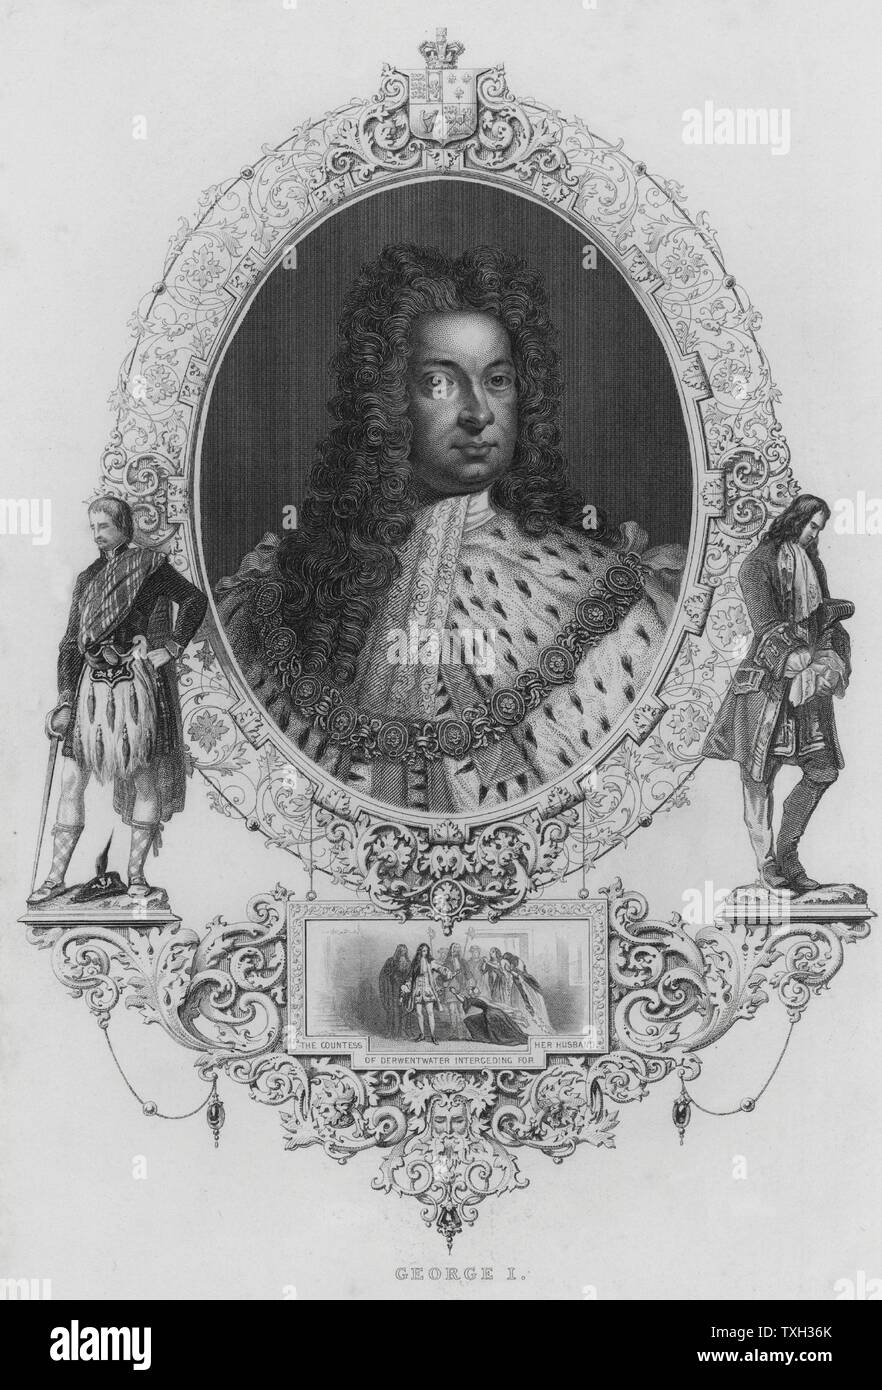 George 1 (1660-1727): König von Großbritannien und Irland von 1714. Kurfürst von Hannover aus dem Jahr 1698. Gravur. Stockfoto